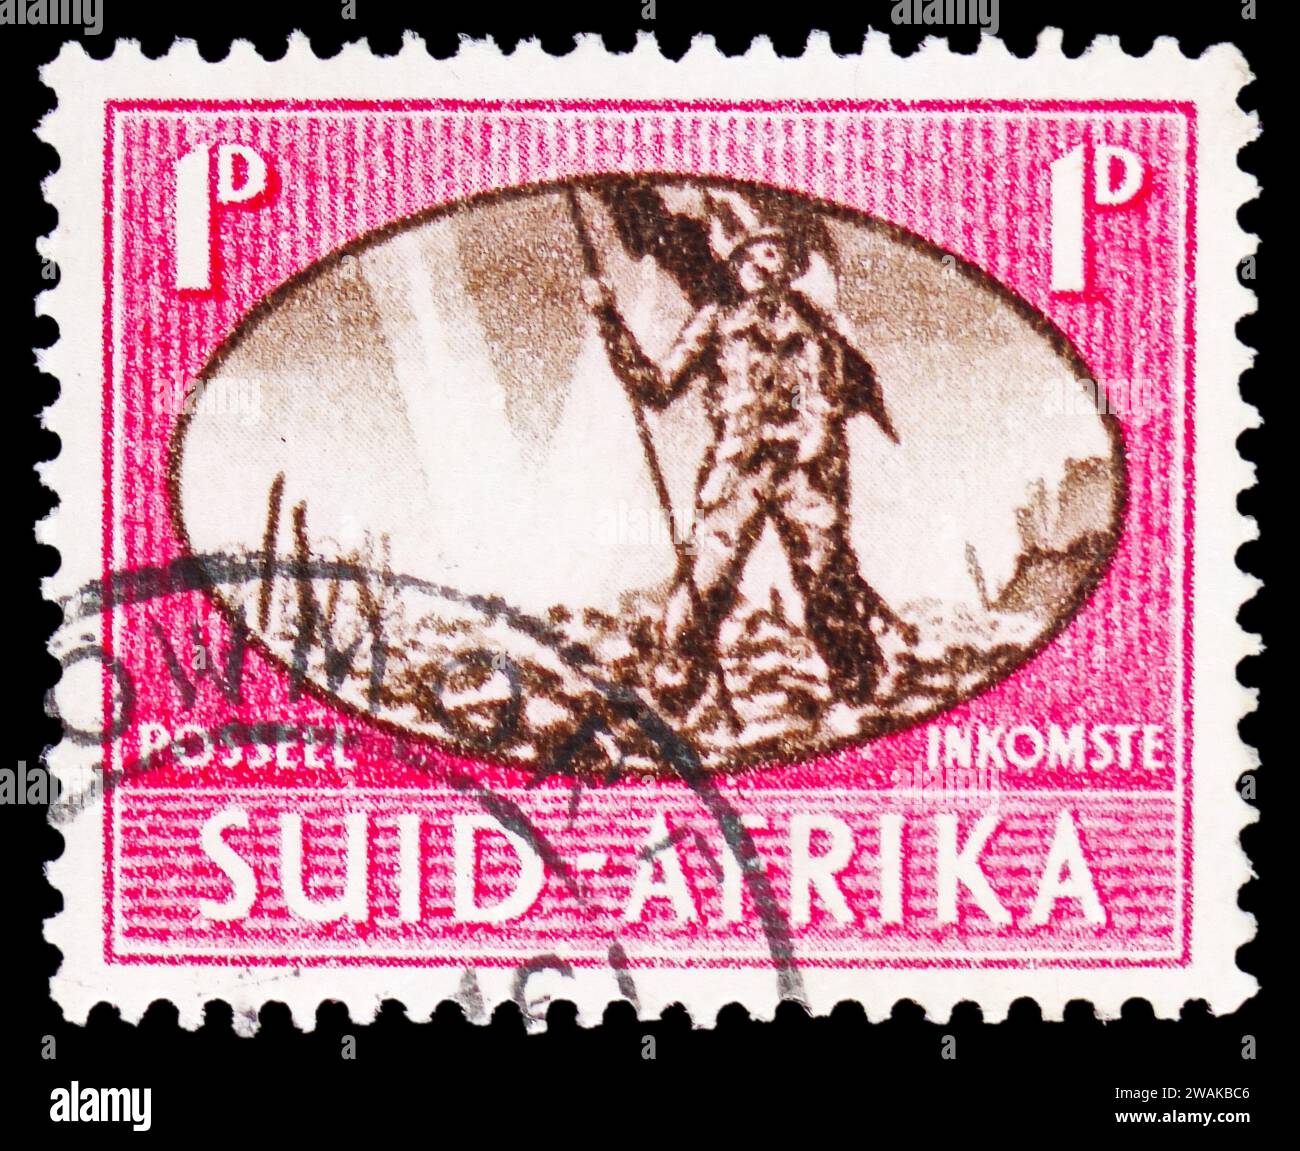 MOSCOU, RUSSIE - 17 DÉCEMBRE 2023 : le timbre-poste imprimé en Afrique du Sud montre la série "victoire", la paix et la victoire, vers 1945 Banque D'Images